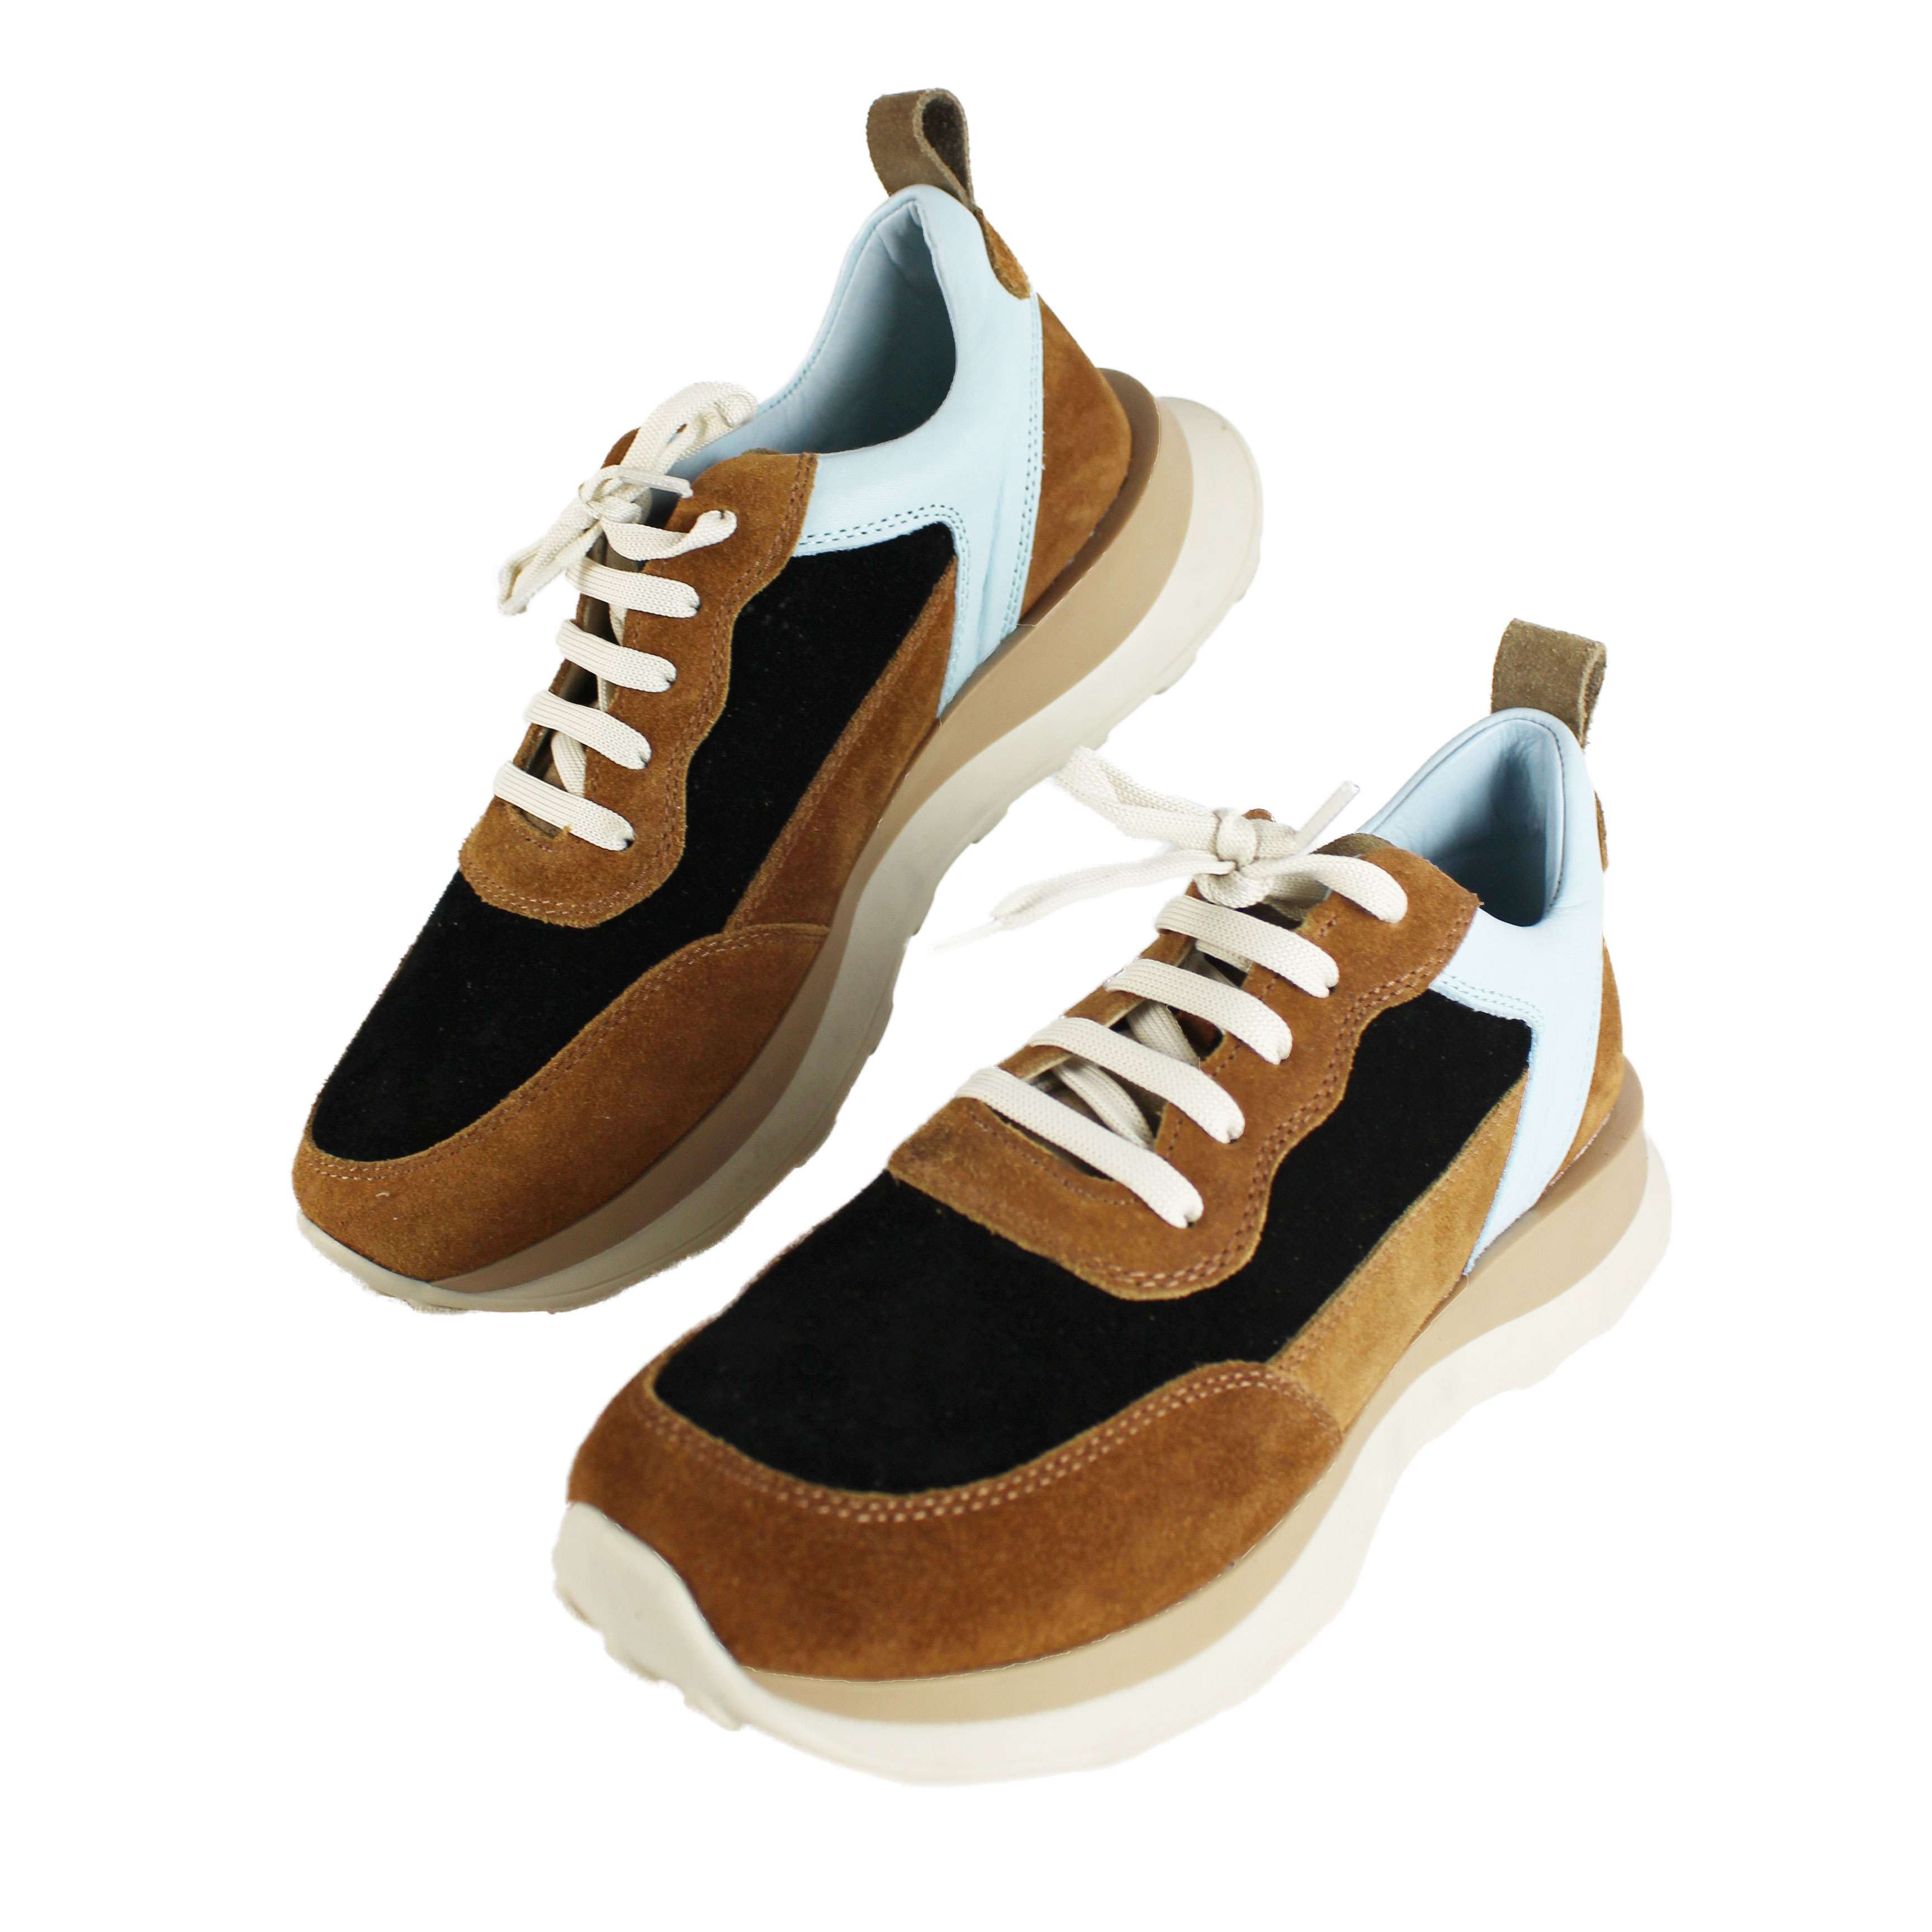 Calçados Esportivos Femininos - Sapatos femininos | Sport Zone MKP